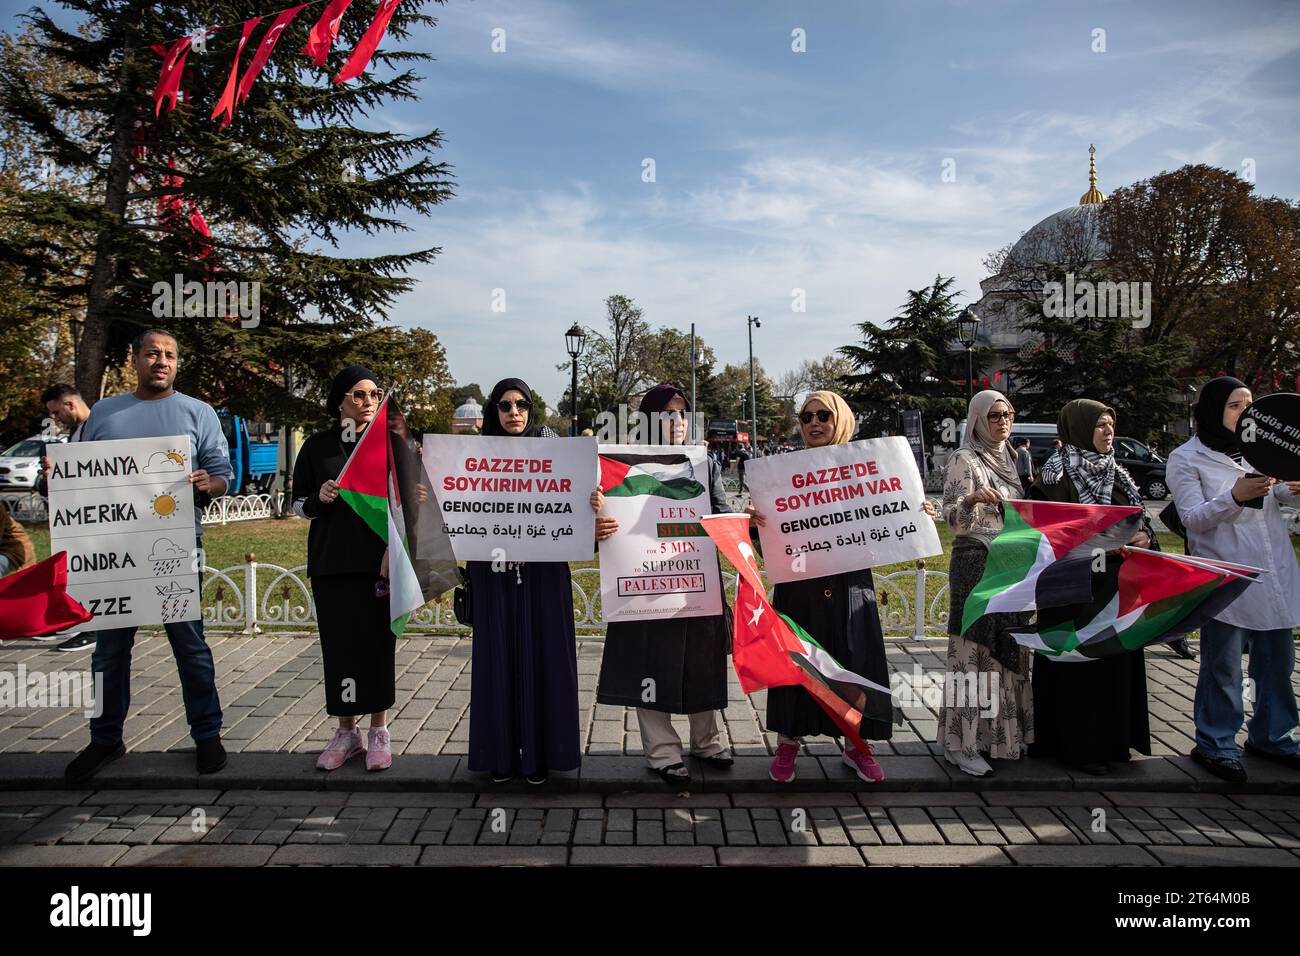 Die Demonstranten halten Plakate, die ihre Meinung während eines Sit-in-Protests zum Ausdruck bringen. Die Solidaritätsinitiative mit palästinensischen Frauen wird am 8. Tag des 15-tägigen Sit-in-Protestes auf dem Sultanahmet-Platz fortgesetzt. (Foto: Onur Dogman / SOPA Images/SIPA USA) Stockfoto